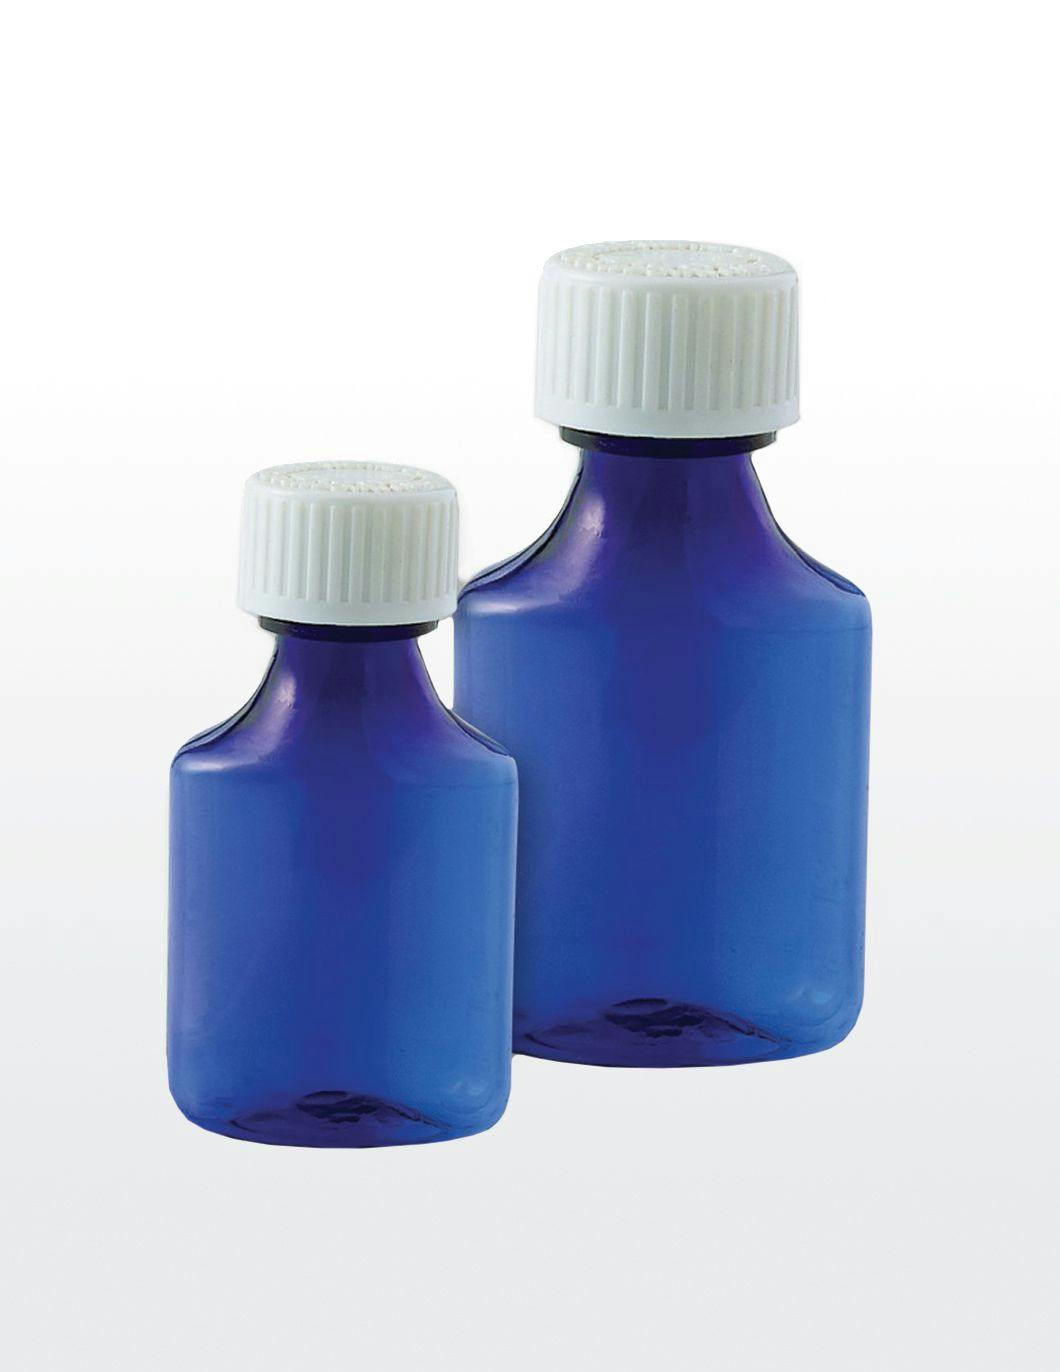 blue-plastic-liquid-ovals-with-child-resistant-cap